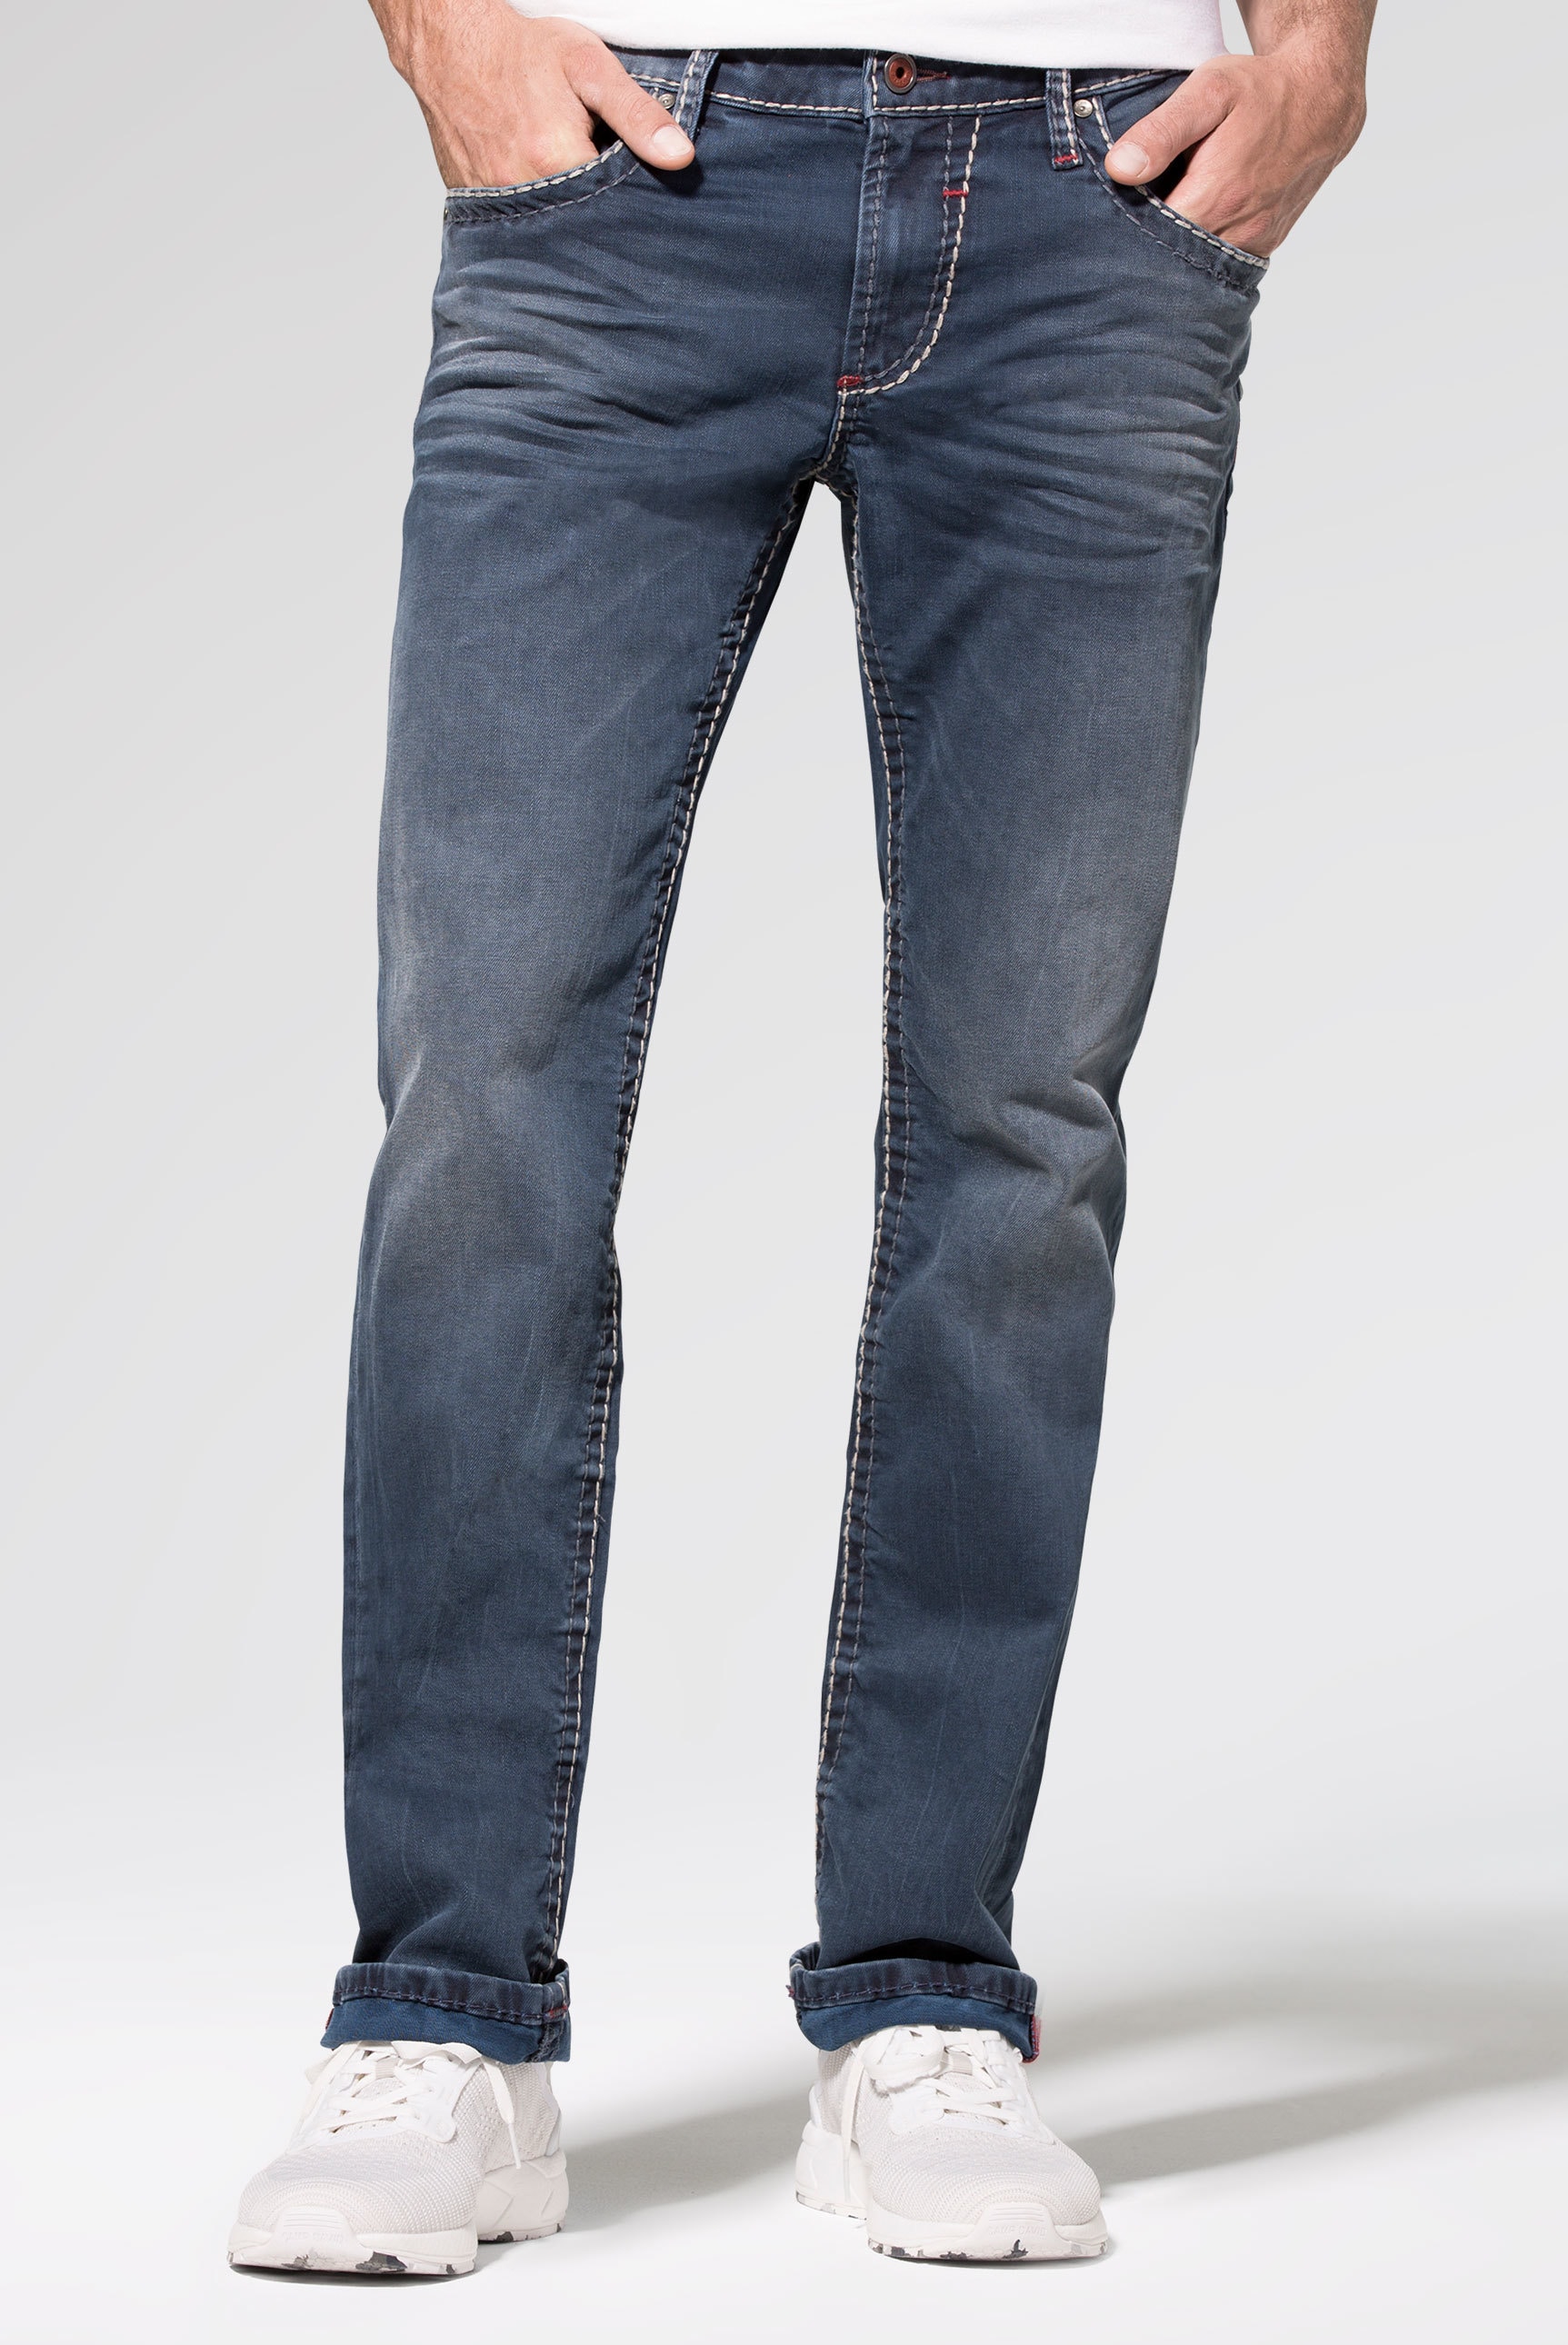 CAMP DAVID Regular-fit-Jeans, Münztasche mit Ziernaht